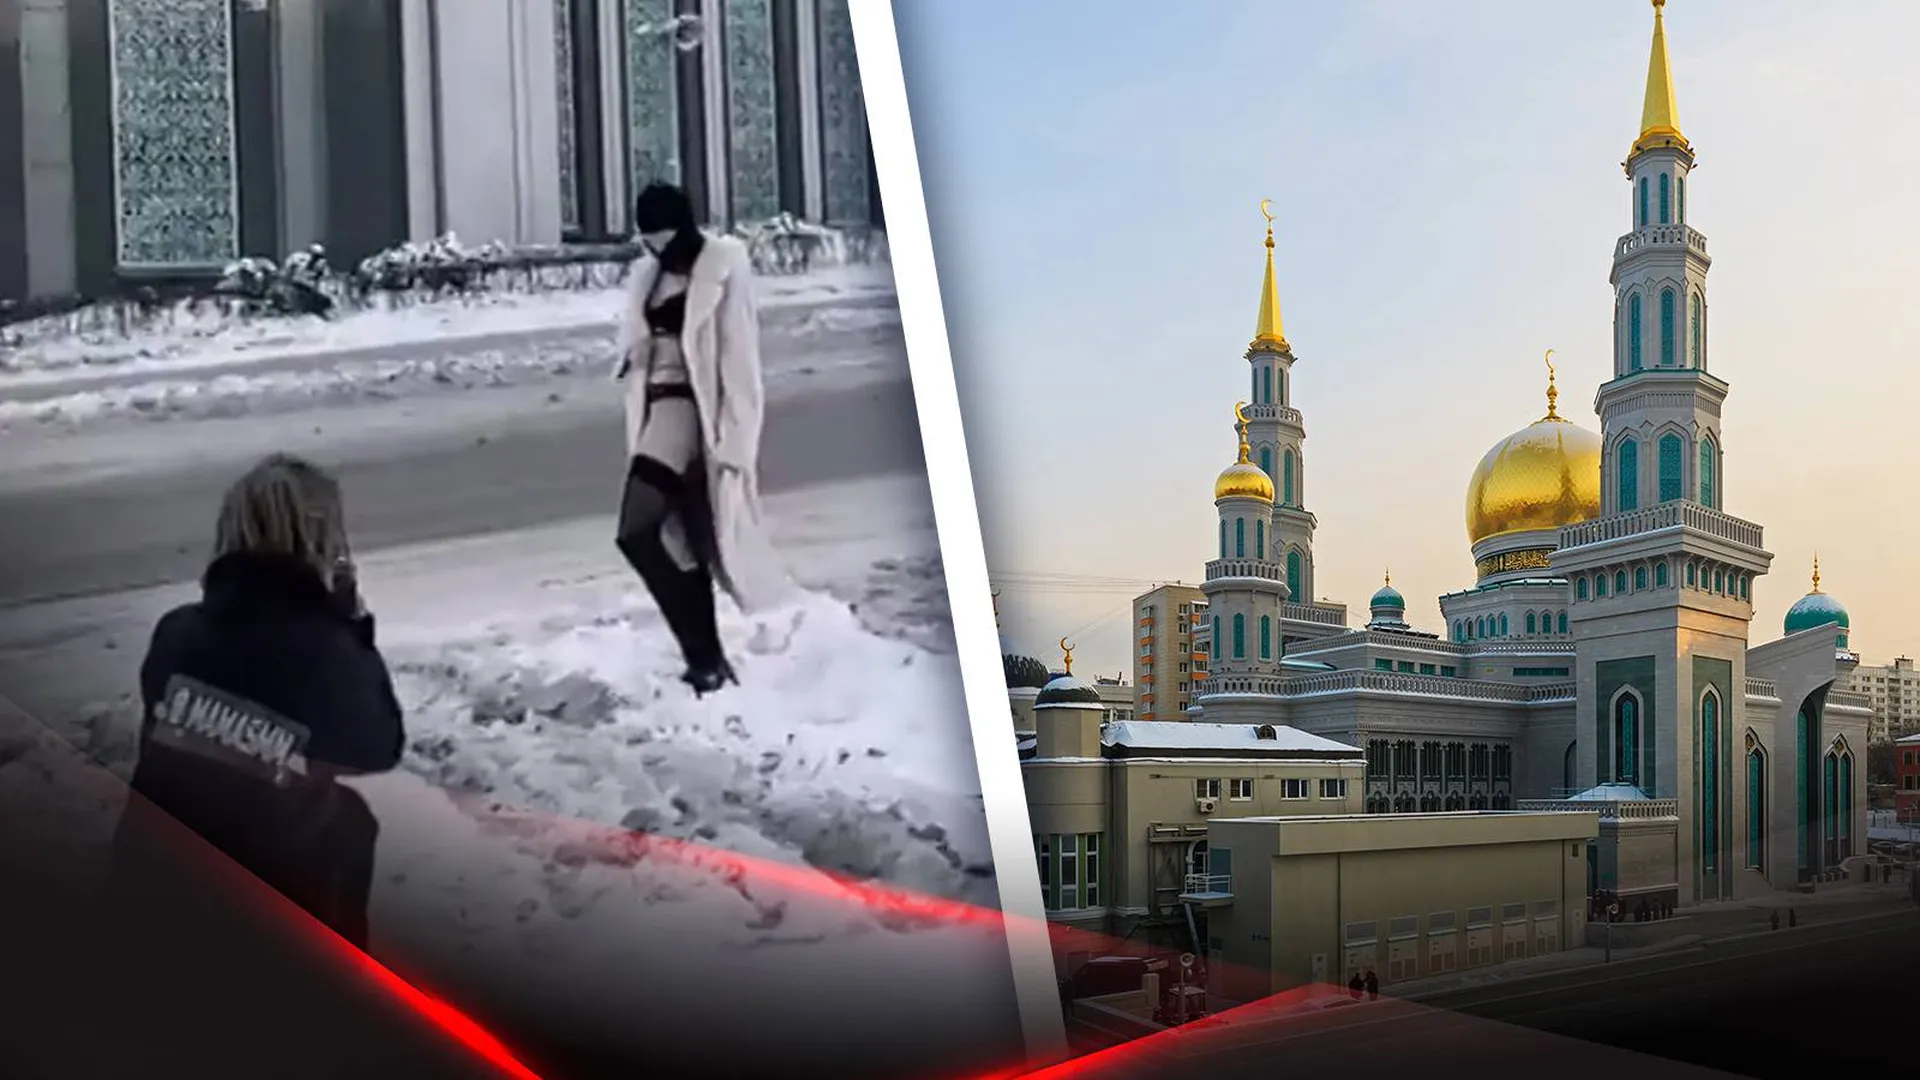 Кадр из скандальной фотосессии и вид Московской соборной мечети